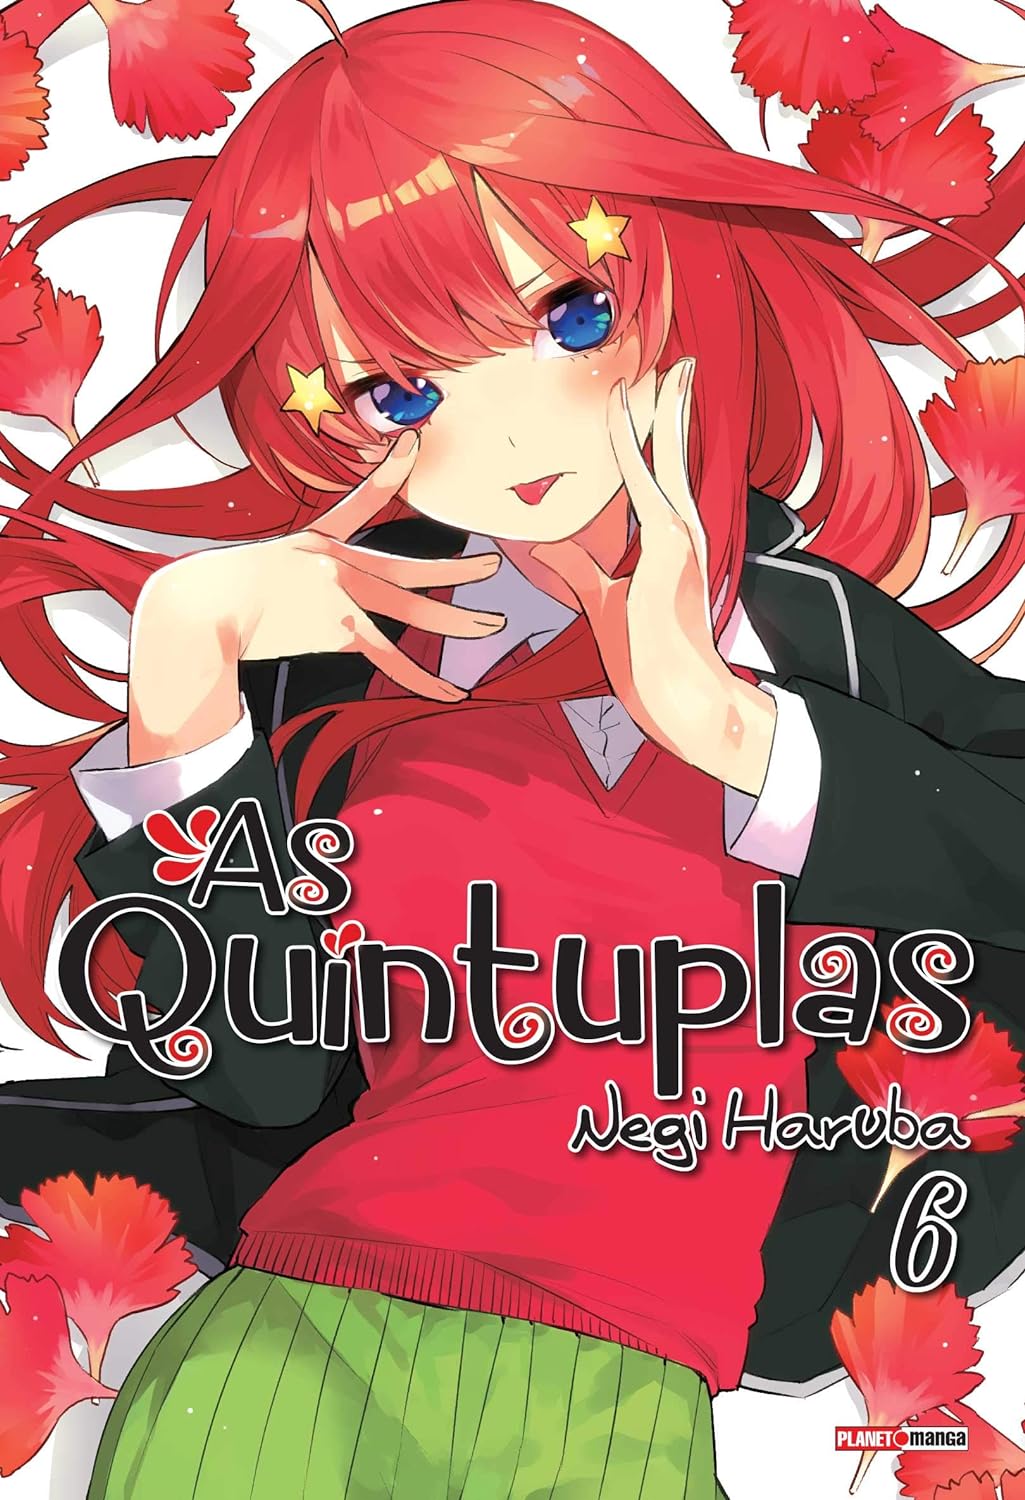 As Quíntuplas terá volume 14.5 em comemoração ao filme